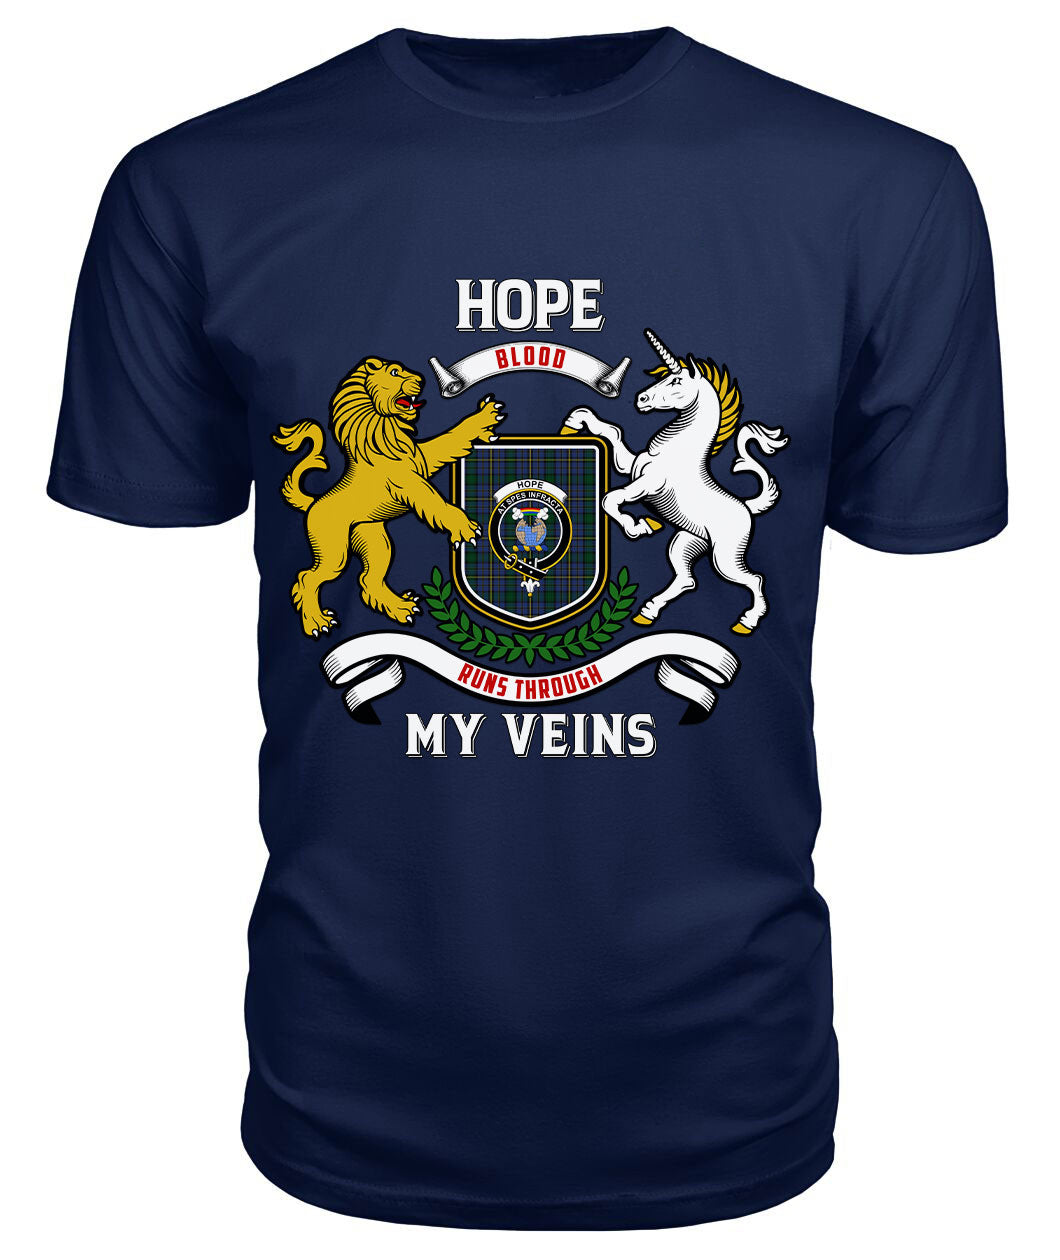 Hope Tartan Crest 2D T-shirt - Blood Runs Through My Veins Style